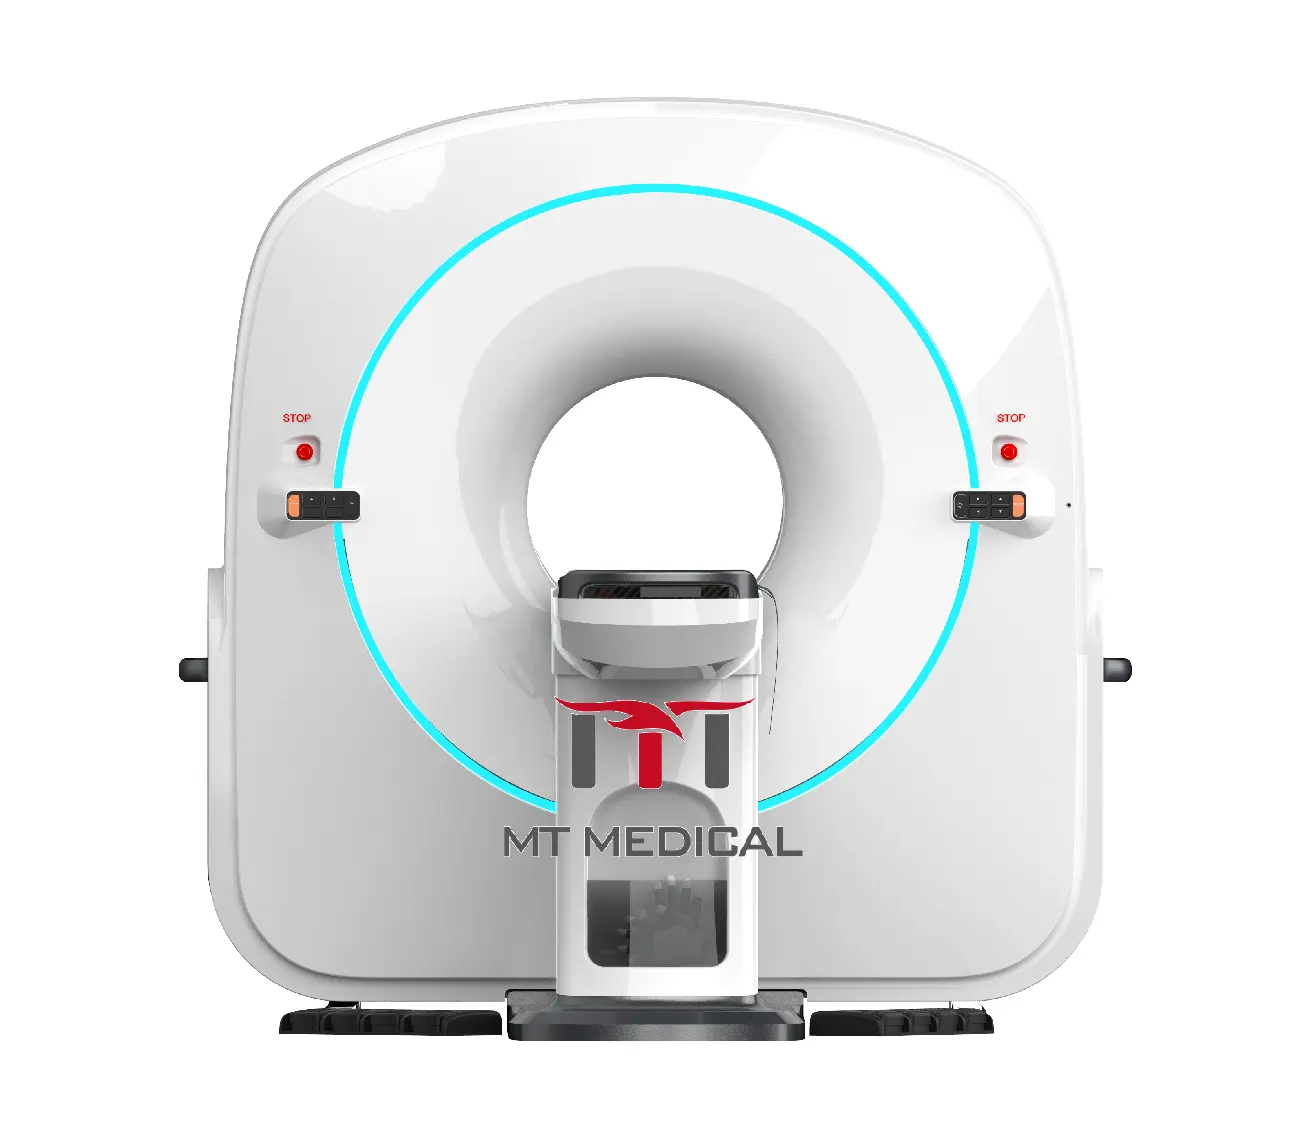 Máquina de escáner CT veterinario de alta calidad MT Medical, máquina de escáner Mri superconductor a la venta, hospital veterinario